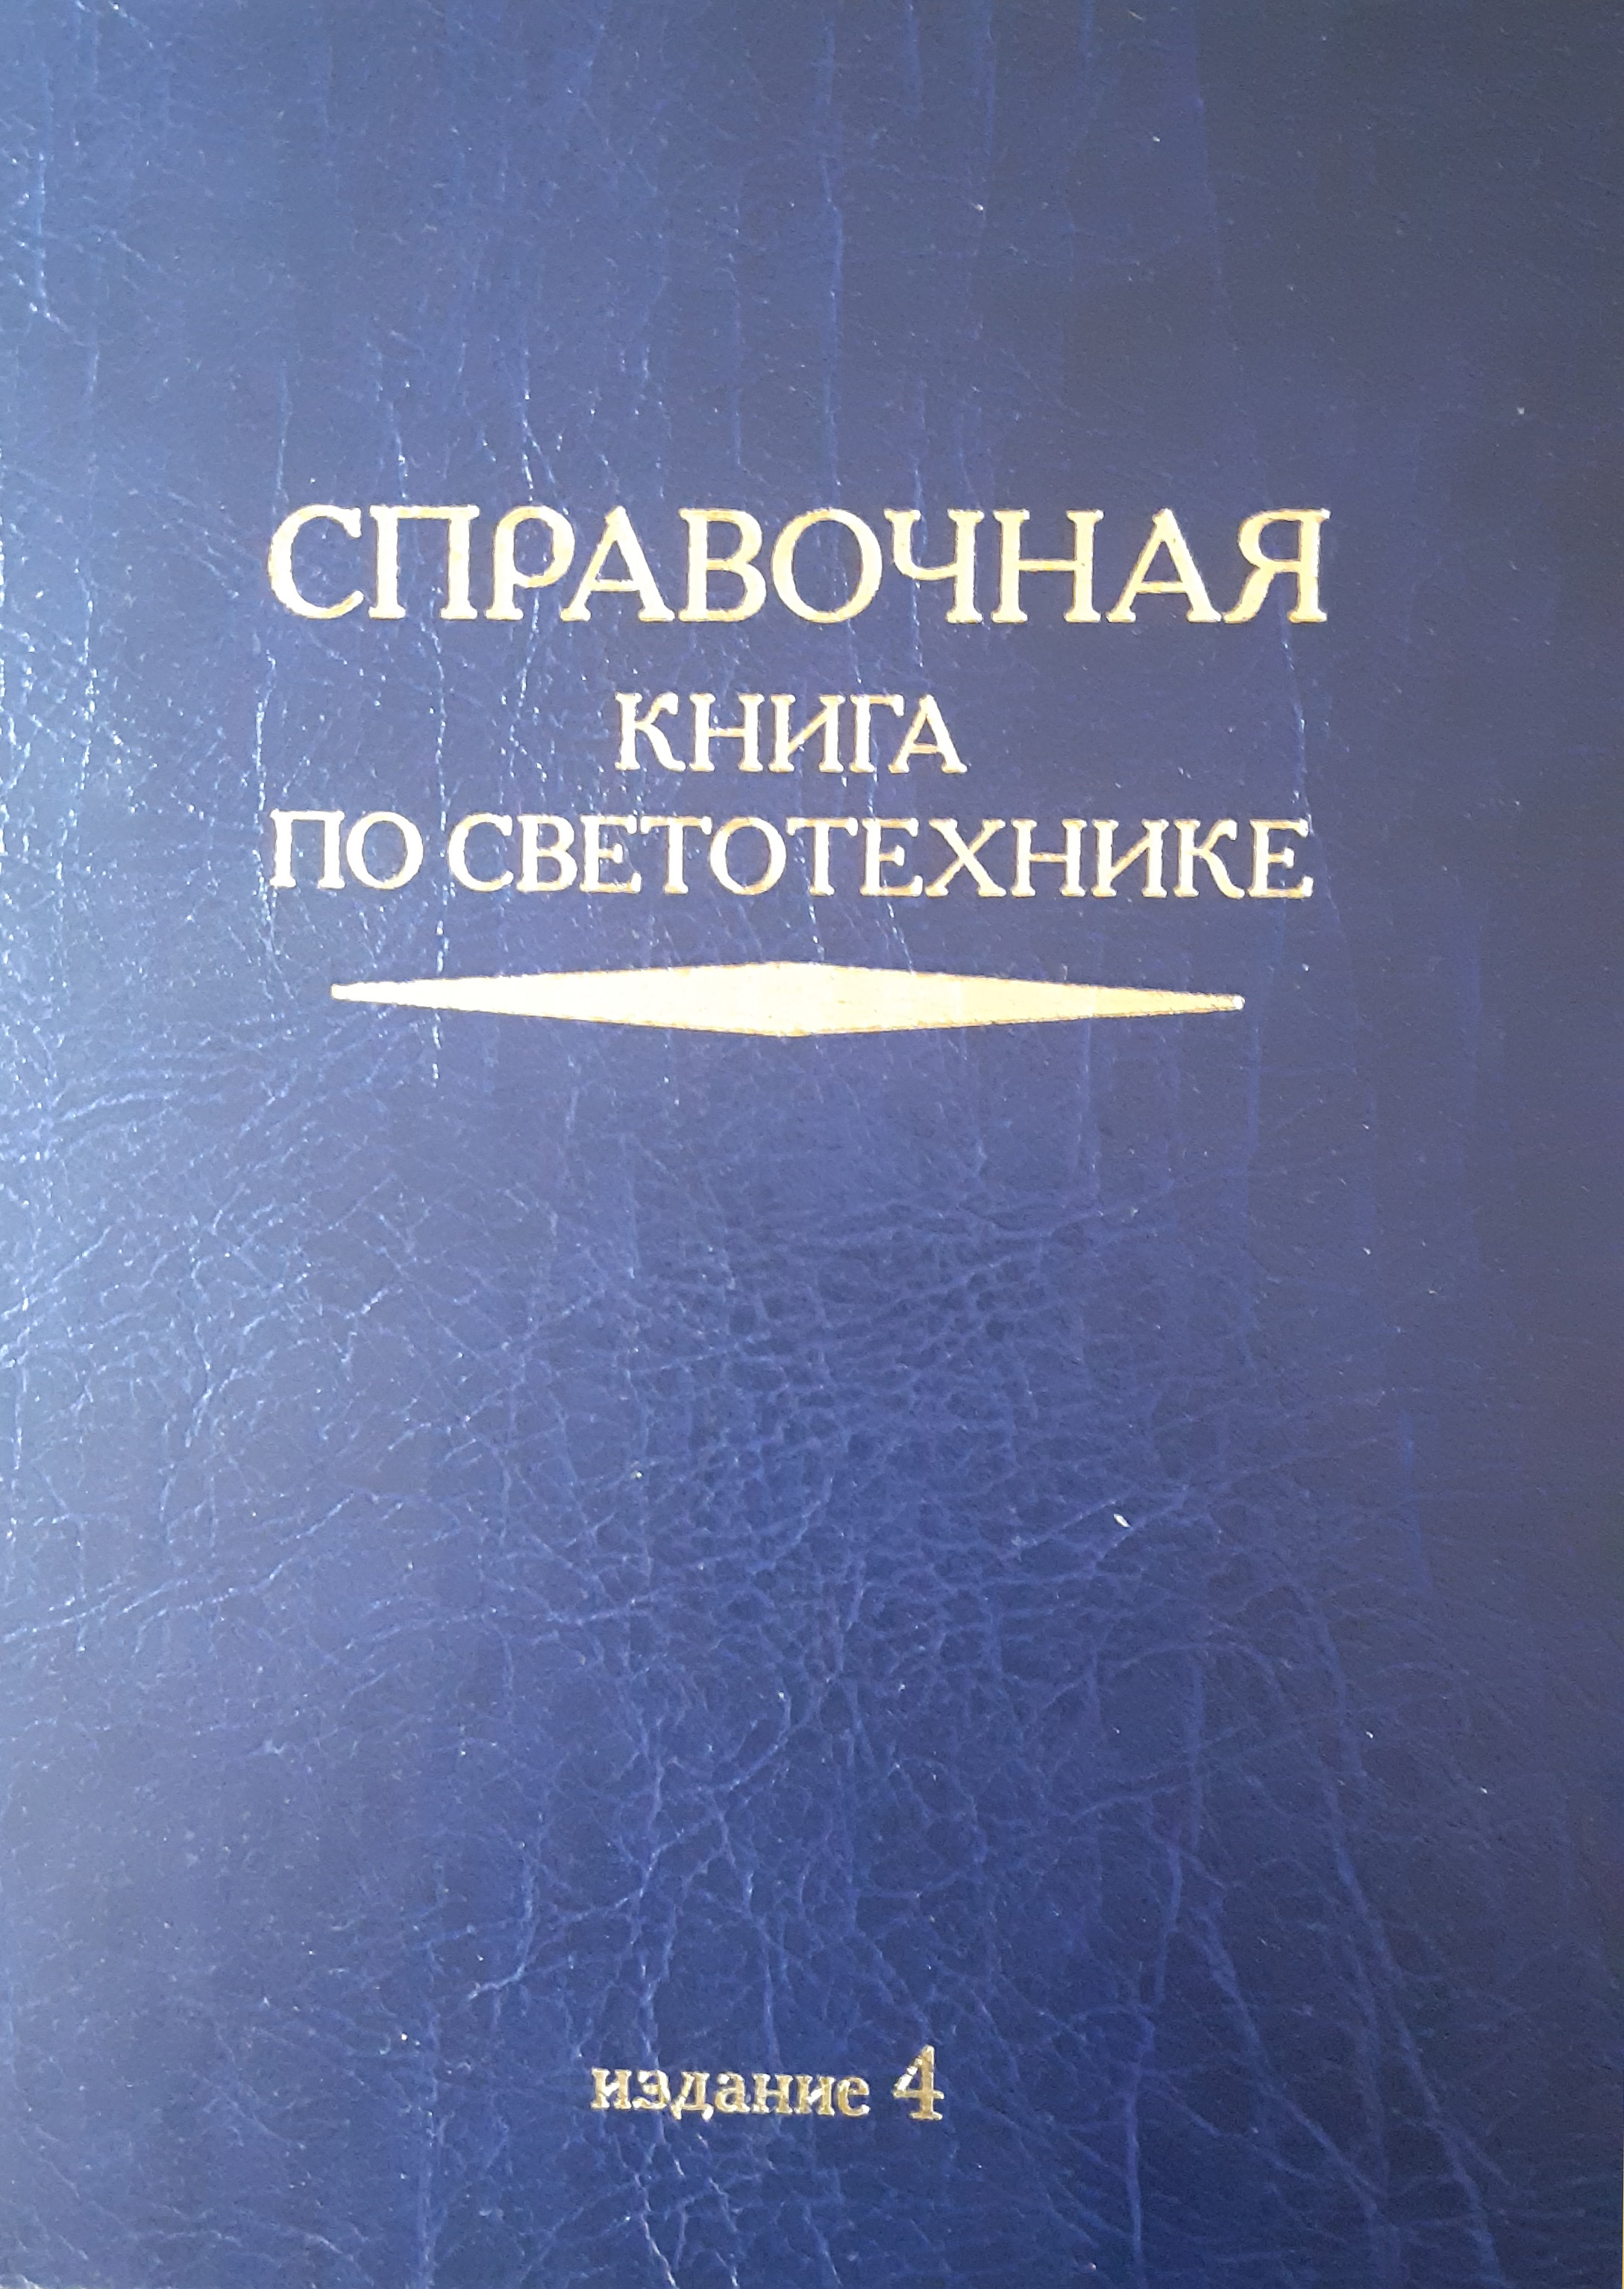 Справочная книга по светотехнике (4 издание). История светотехники